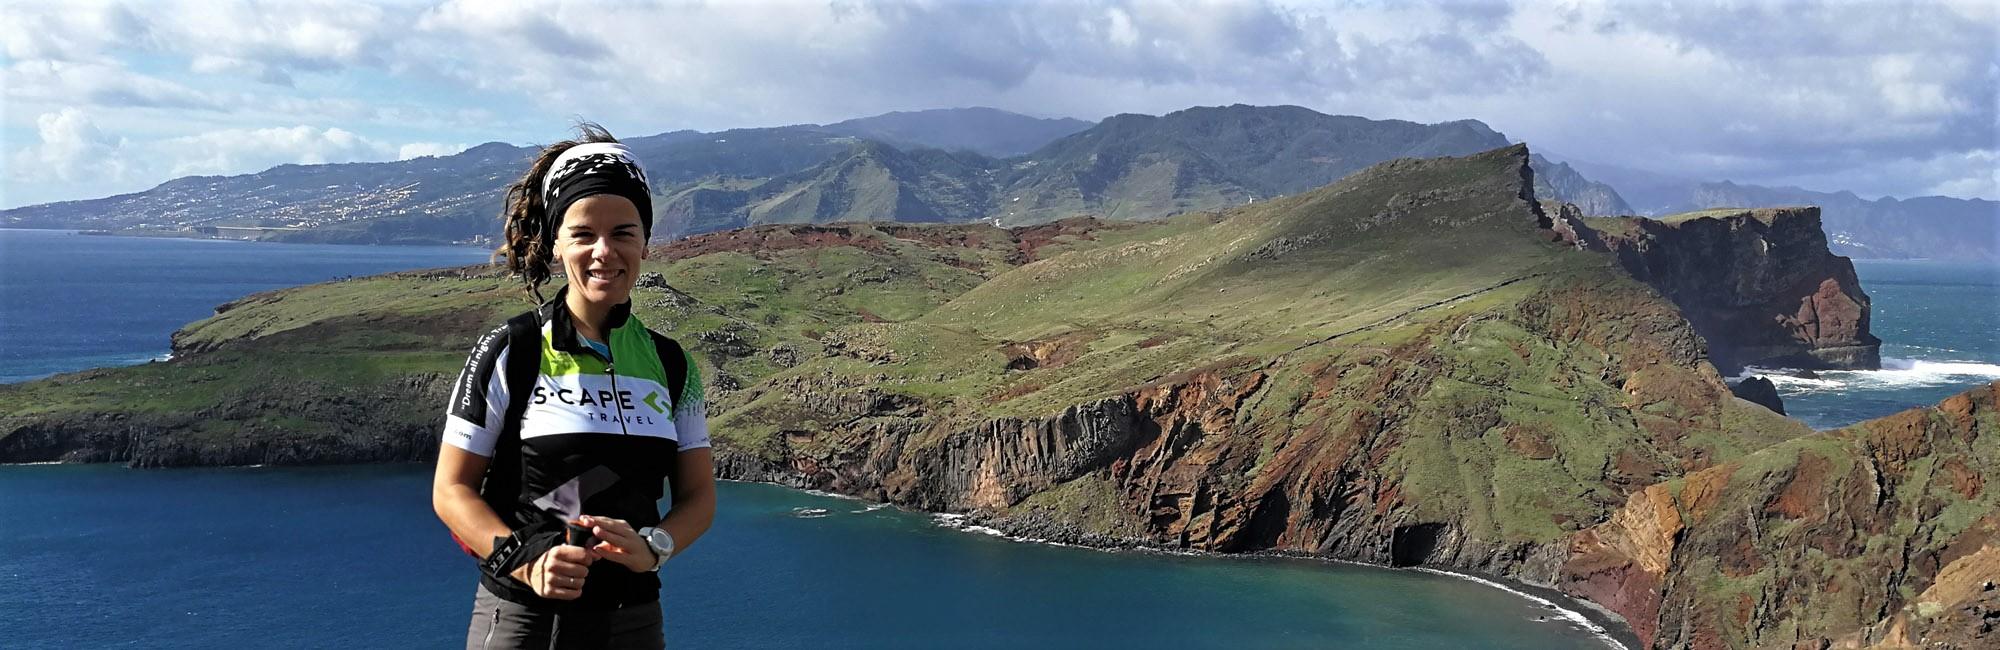 Senderista en la isla de Madeira